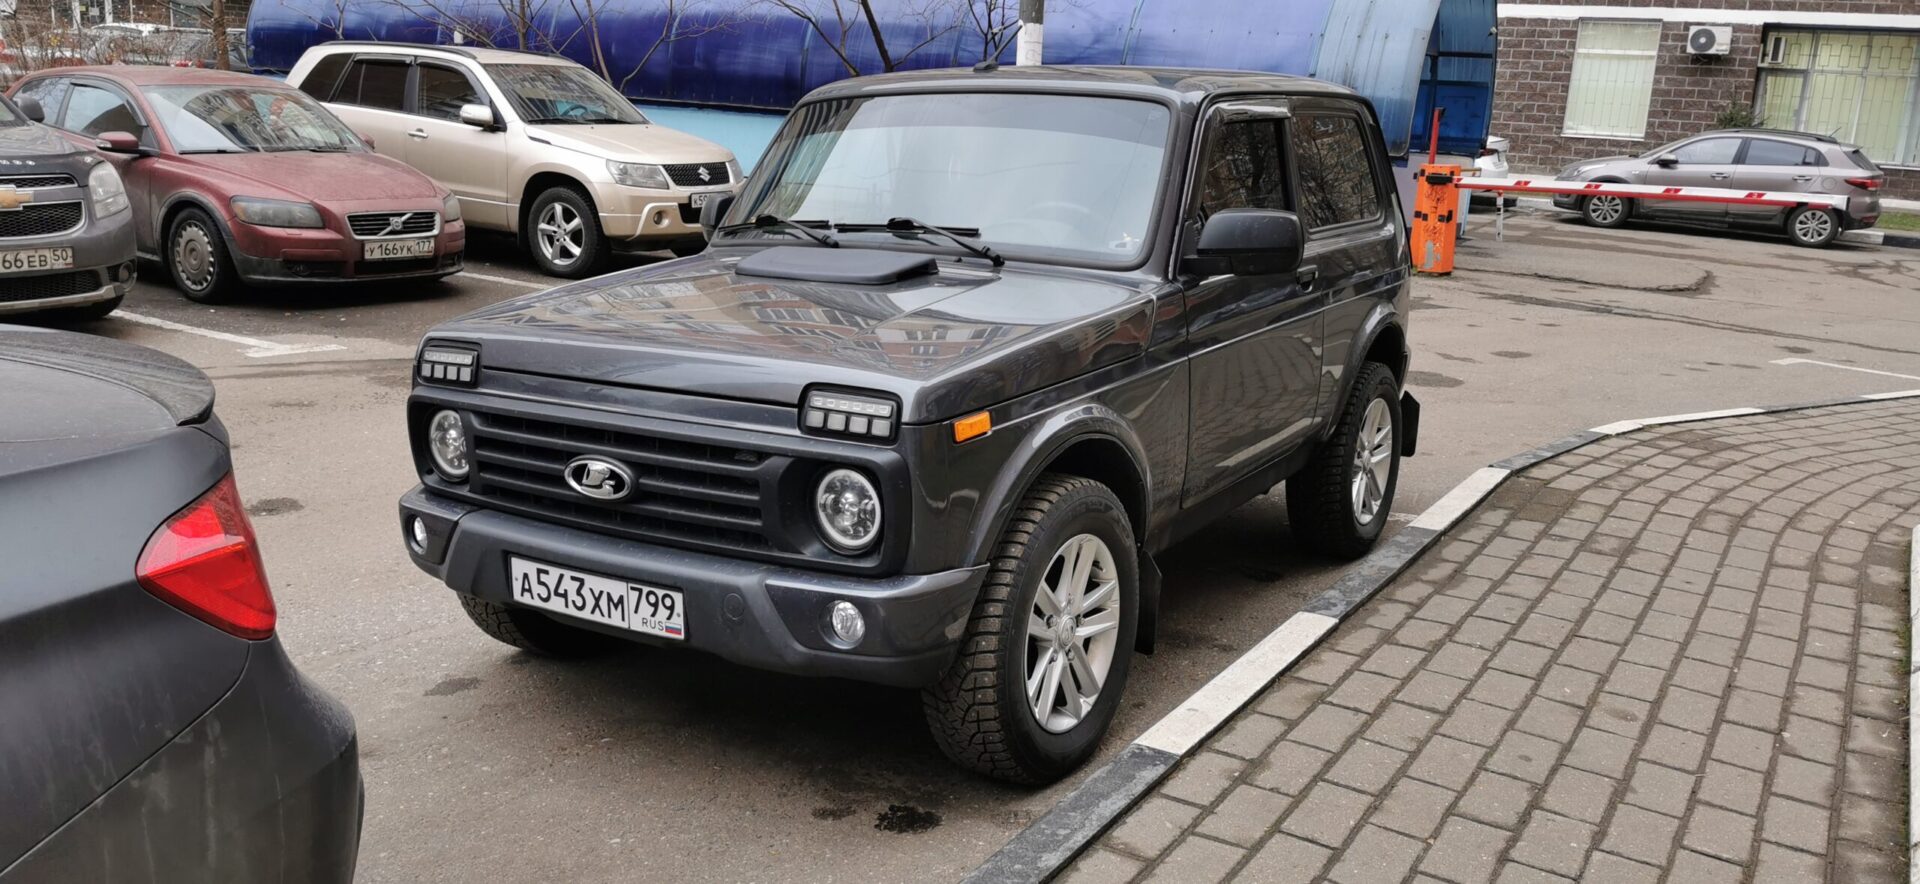 НАМИ наделили монопольным правом сертифицировать автомобили в РФ по упрощенным правилам